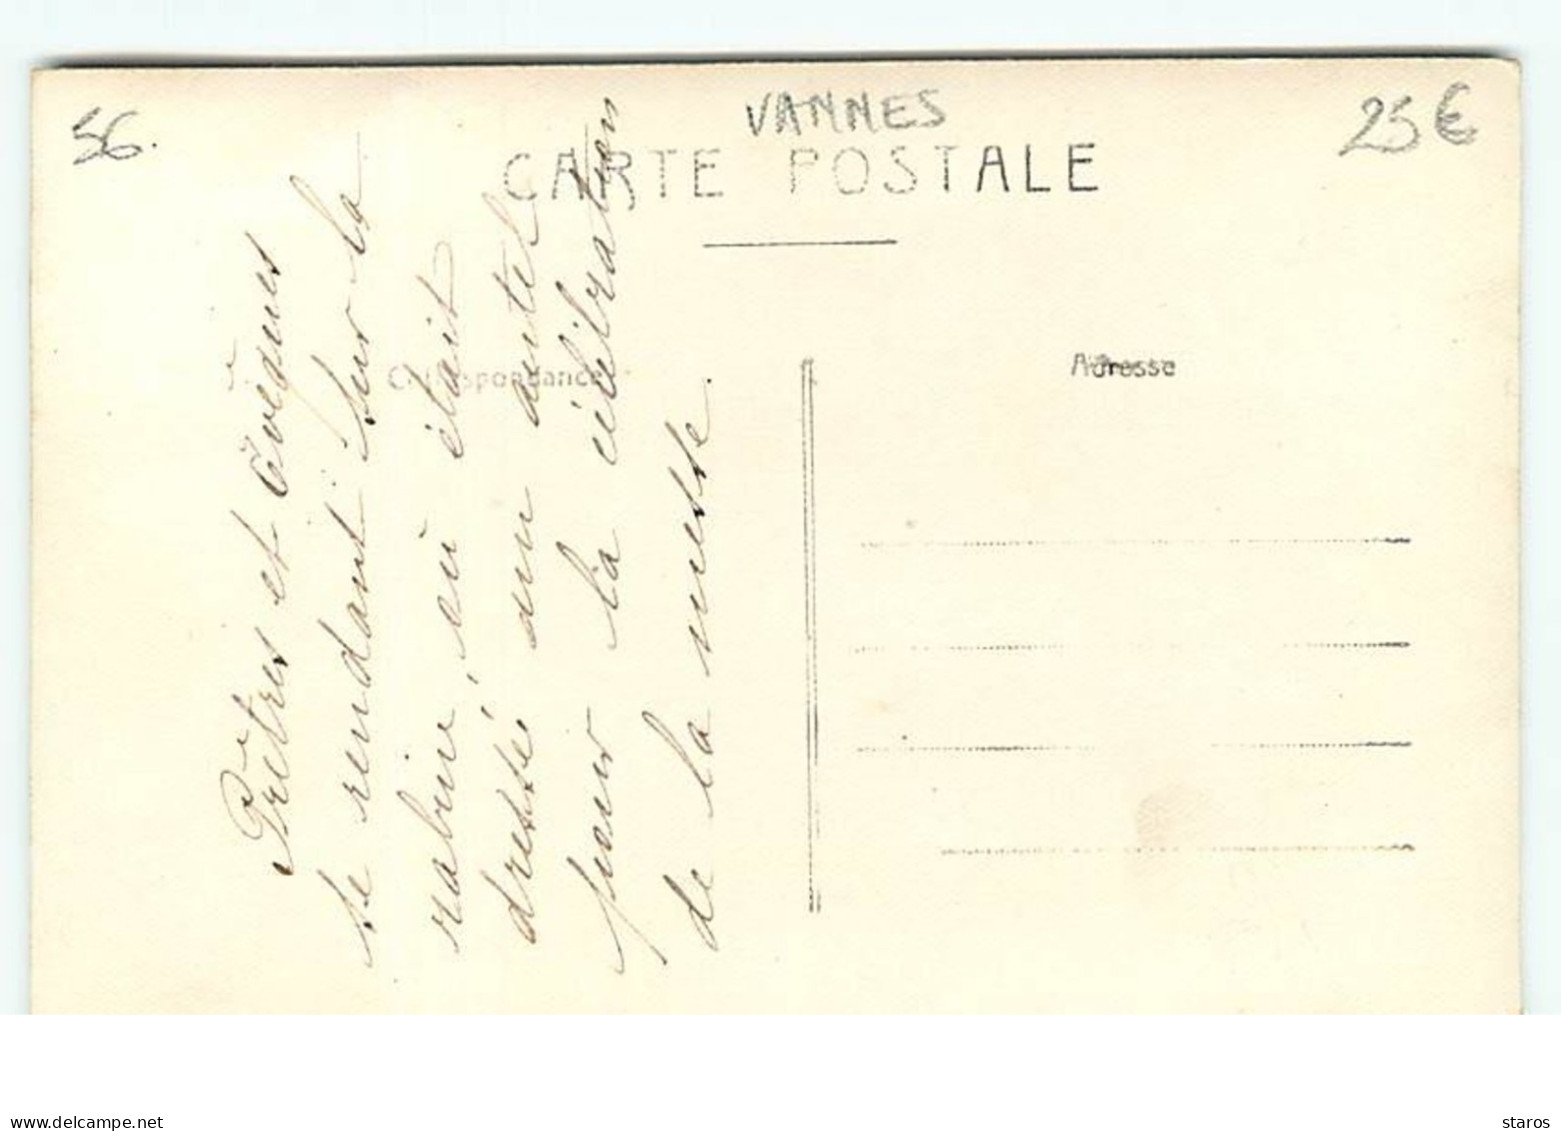 Carte-Photo - VANNES - Fêtes Jubilaires De St Vincent Ferrier 1919 - Prêtres Et Evêques Se Rendant Sur La Rabure - Vannes